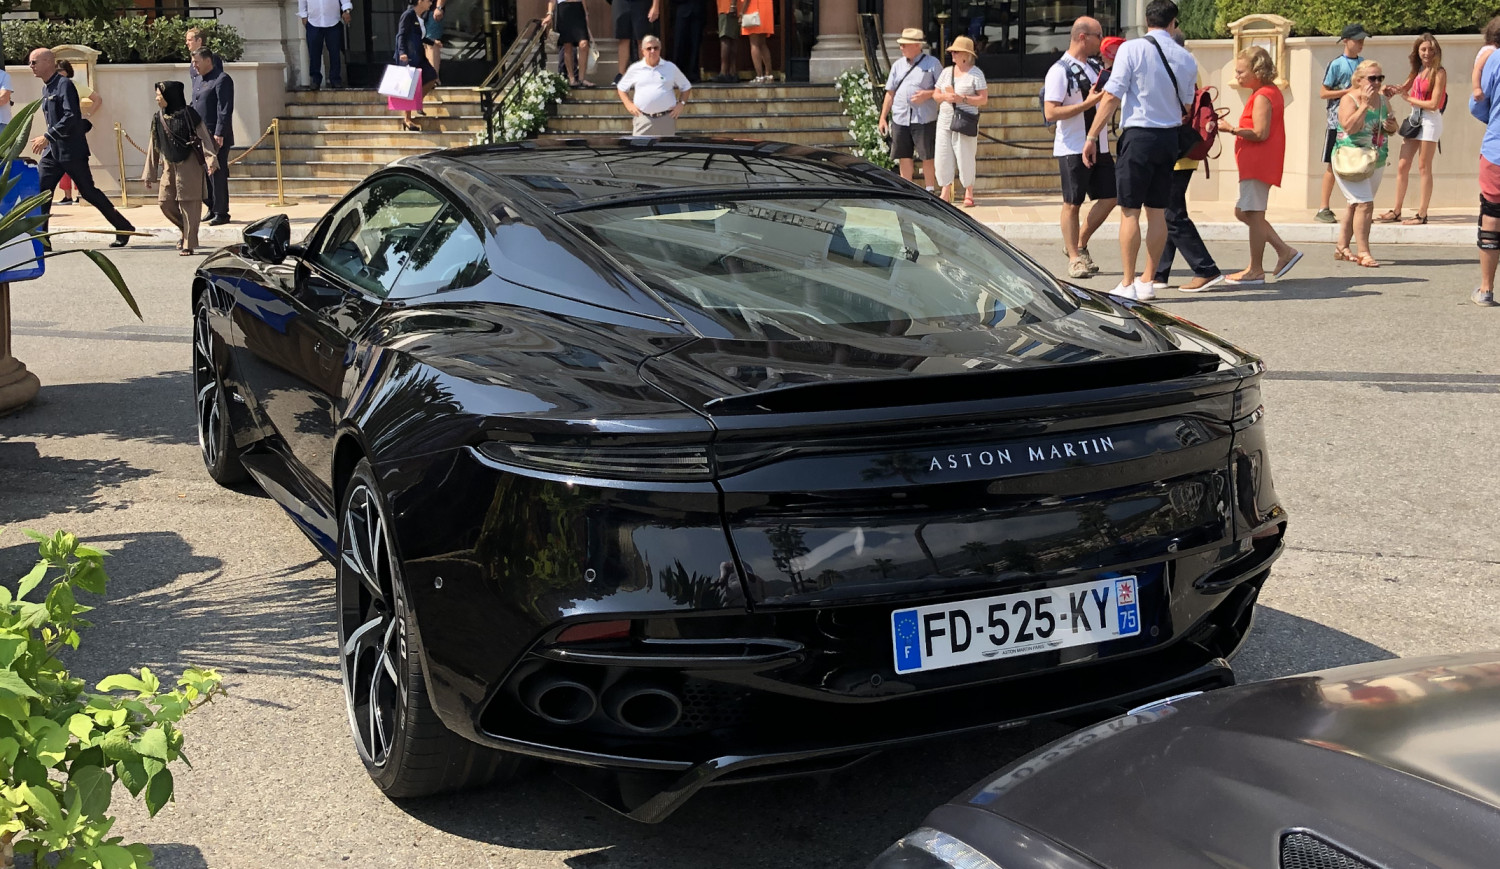 Aston Martin salg på vej